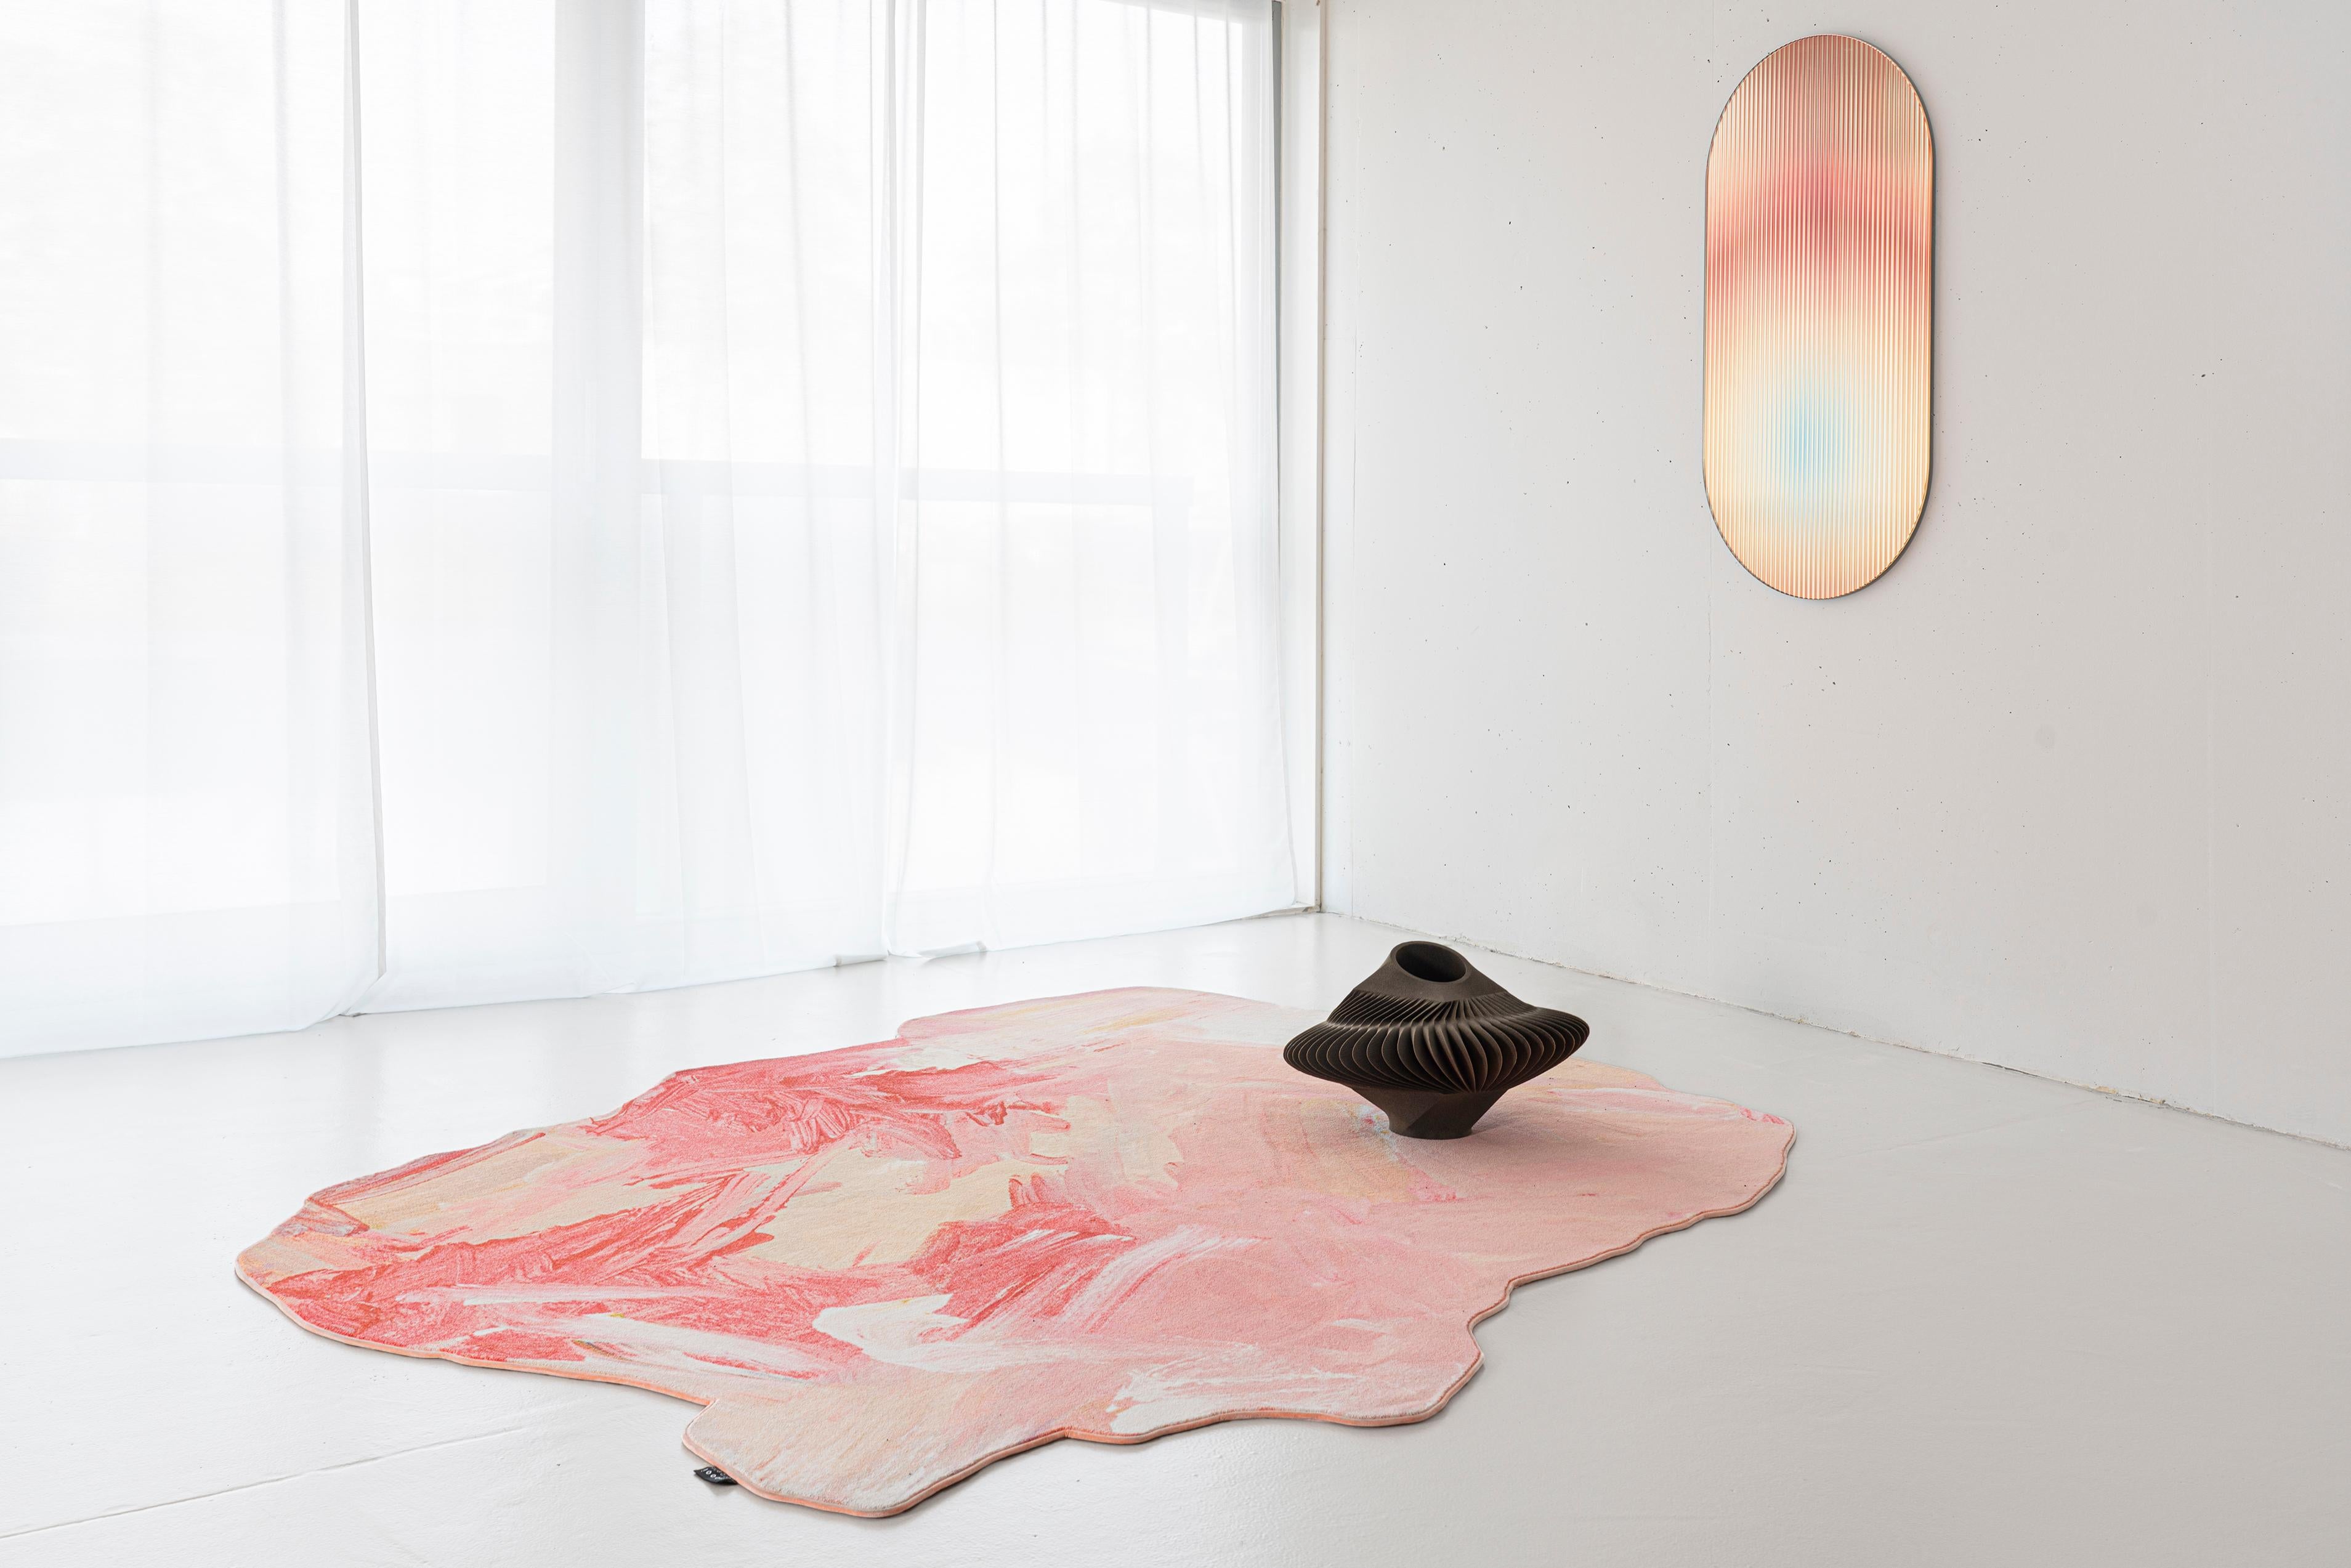 Gemeinsam mit Moooi Carpets hat Rive Roshan eine Serie von Teppichen nach Bildern ihrer 3-jährigen Tochter Ava entworfen. Die 